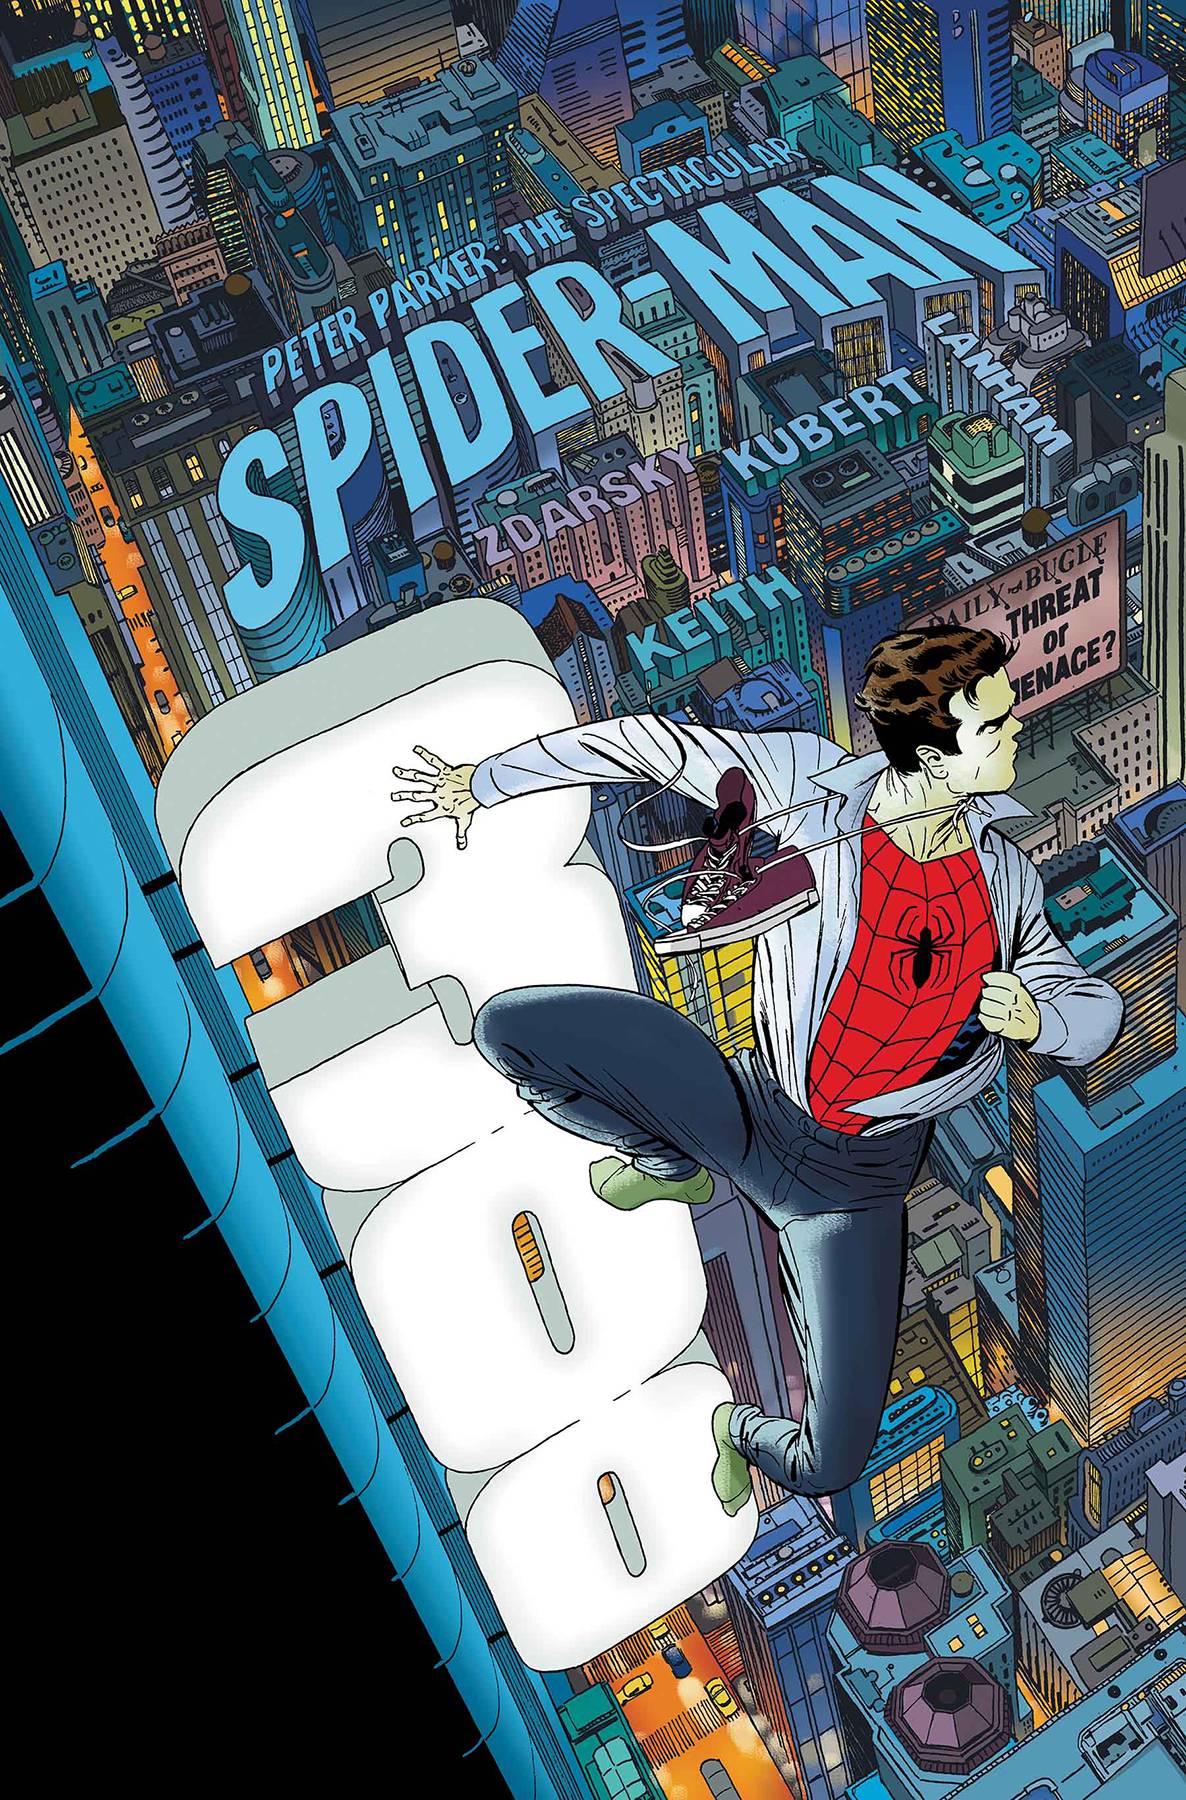 PETER PARKER SPECTACULAR SPIDER-MAN #300 LEG  02/28/18 RD